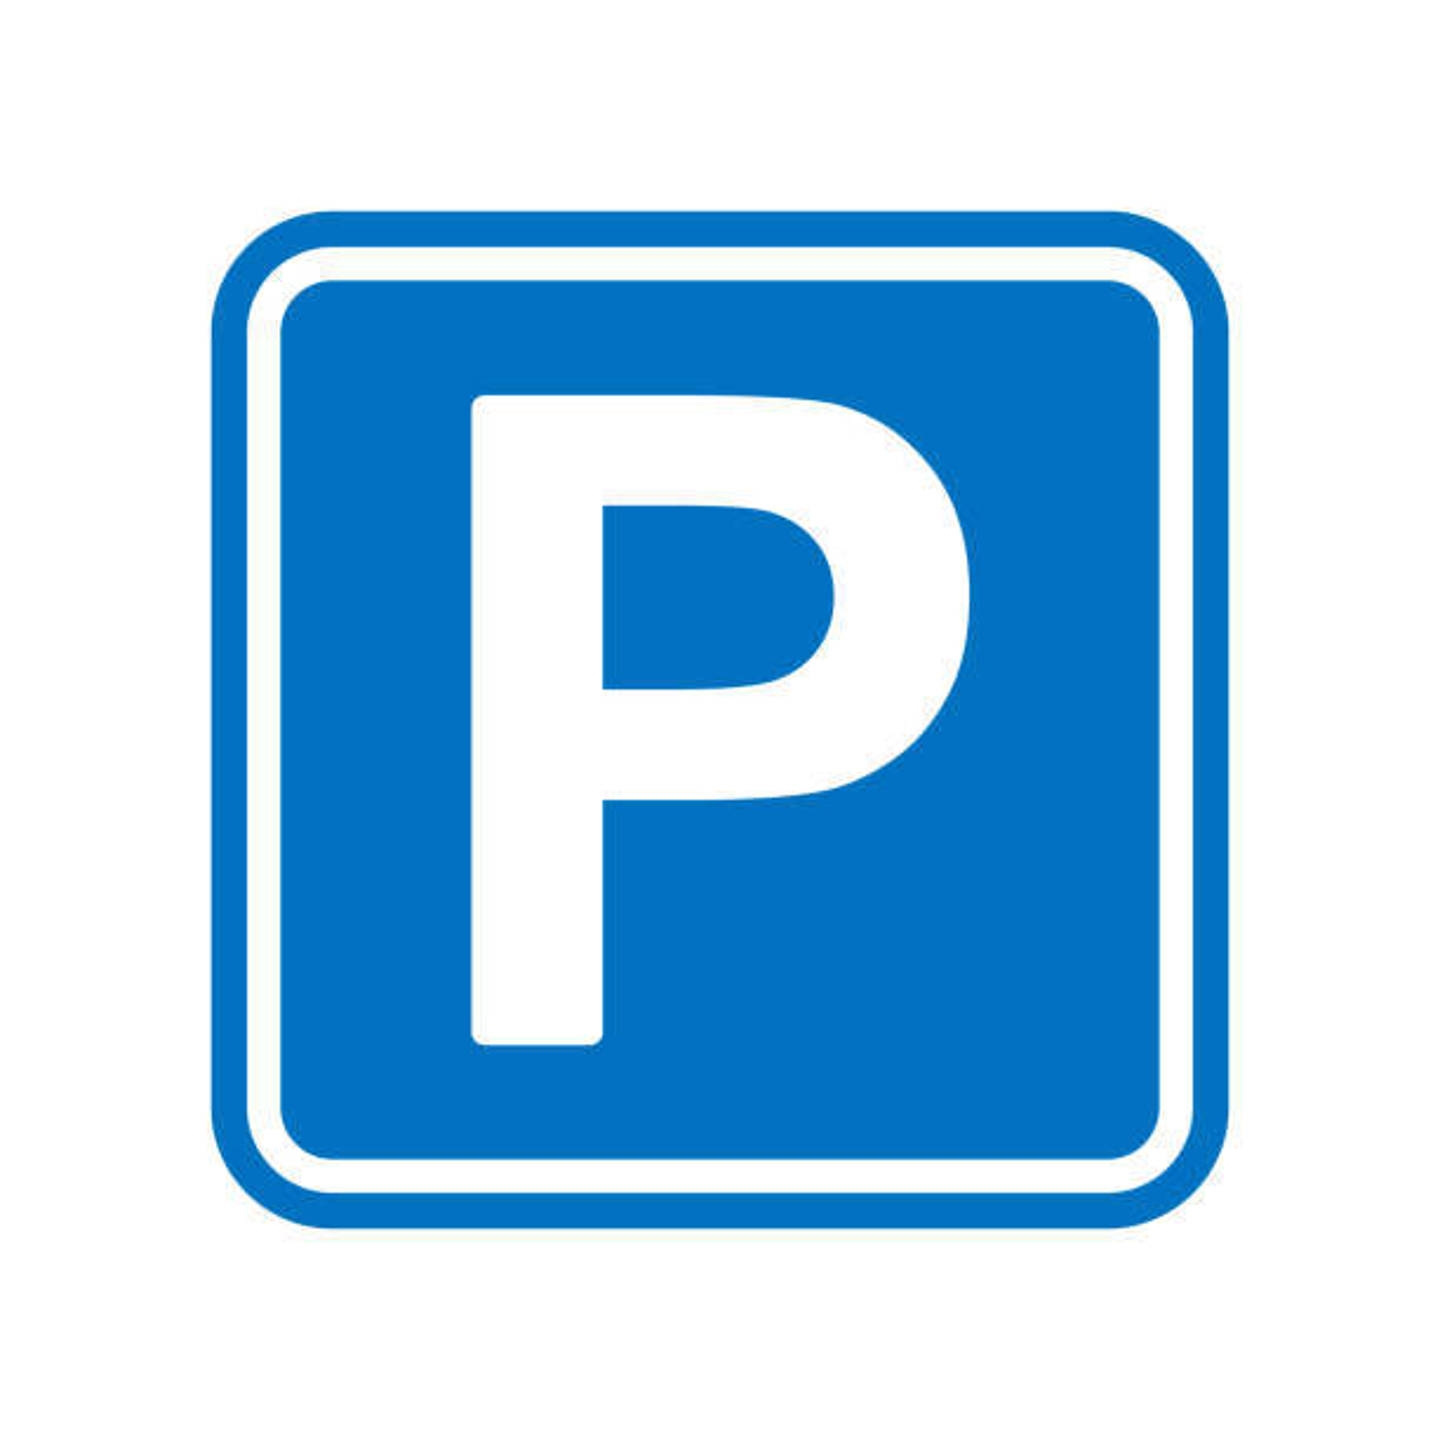 Parking te  koop in Neder-Over-Heembeek 1120 16480.00€  slaapkamers 12.50m² - Zoekertje 1324760